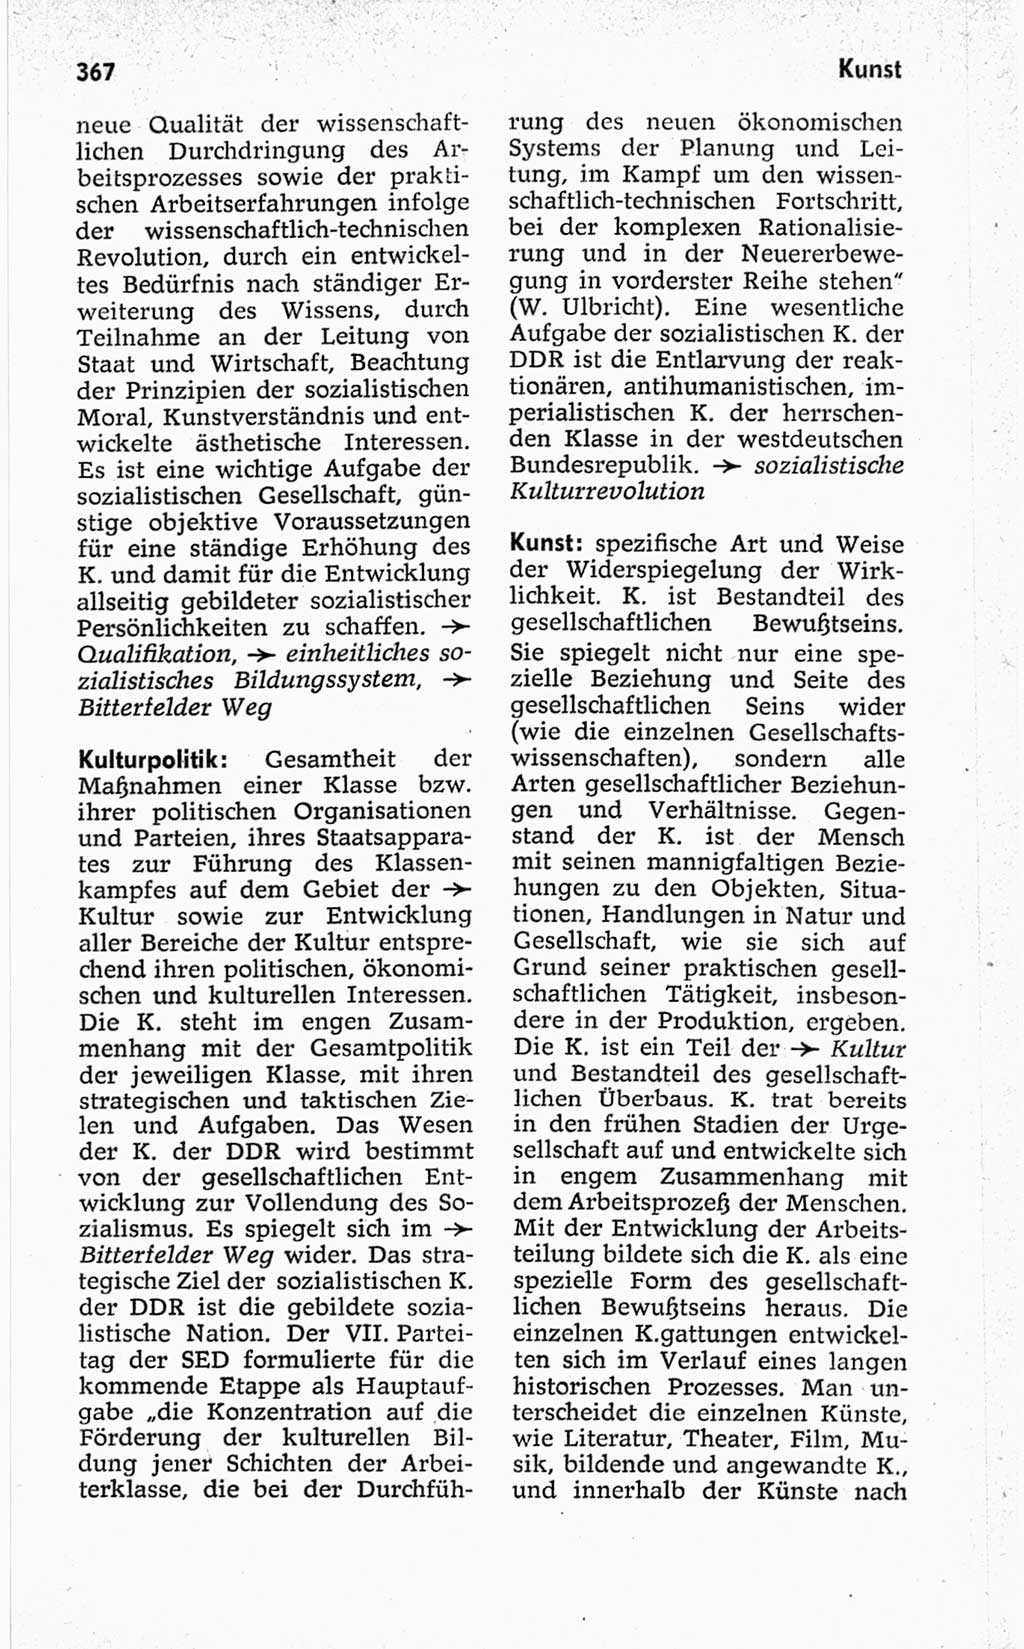 Kleines politisches Wörterbuch [Deutsche Demokratische Republik (DDR)] 1967, Seite 367 (Kl. pol. Wb. DDR 1967, S. 367)